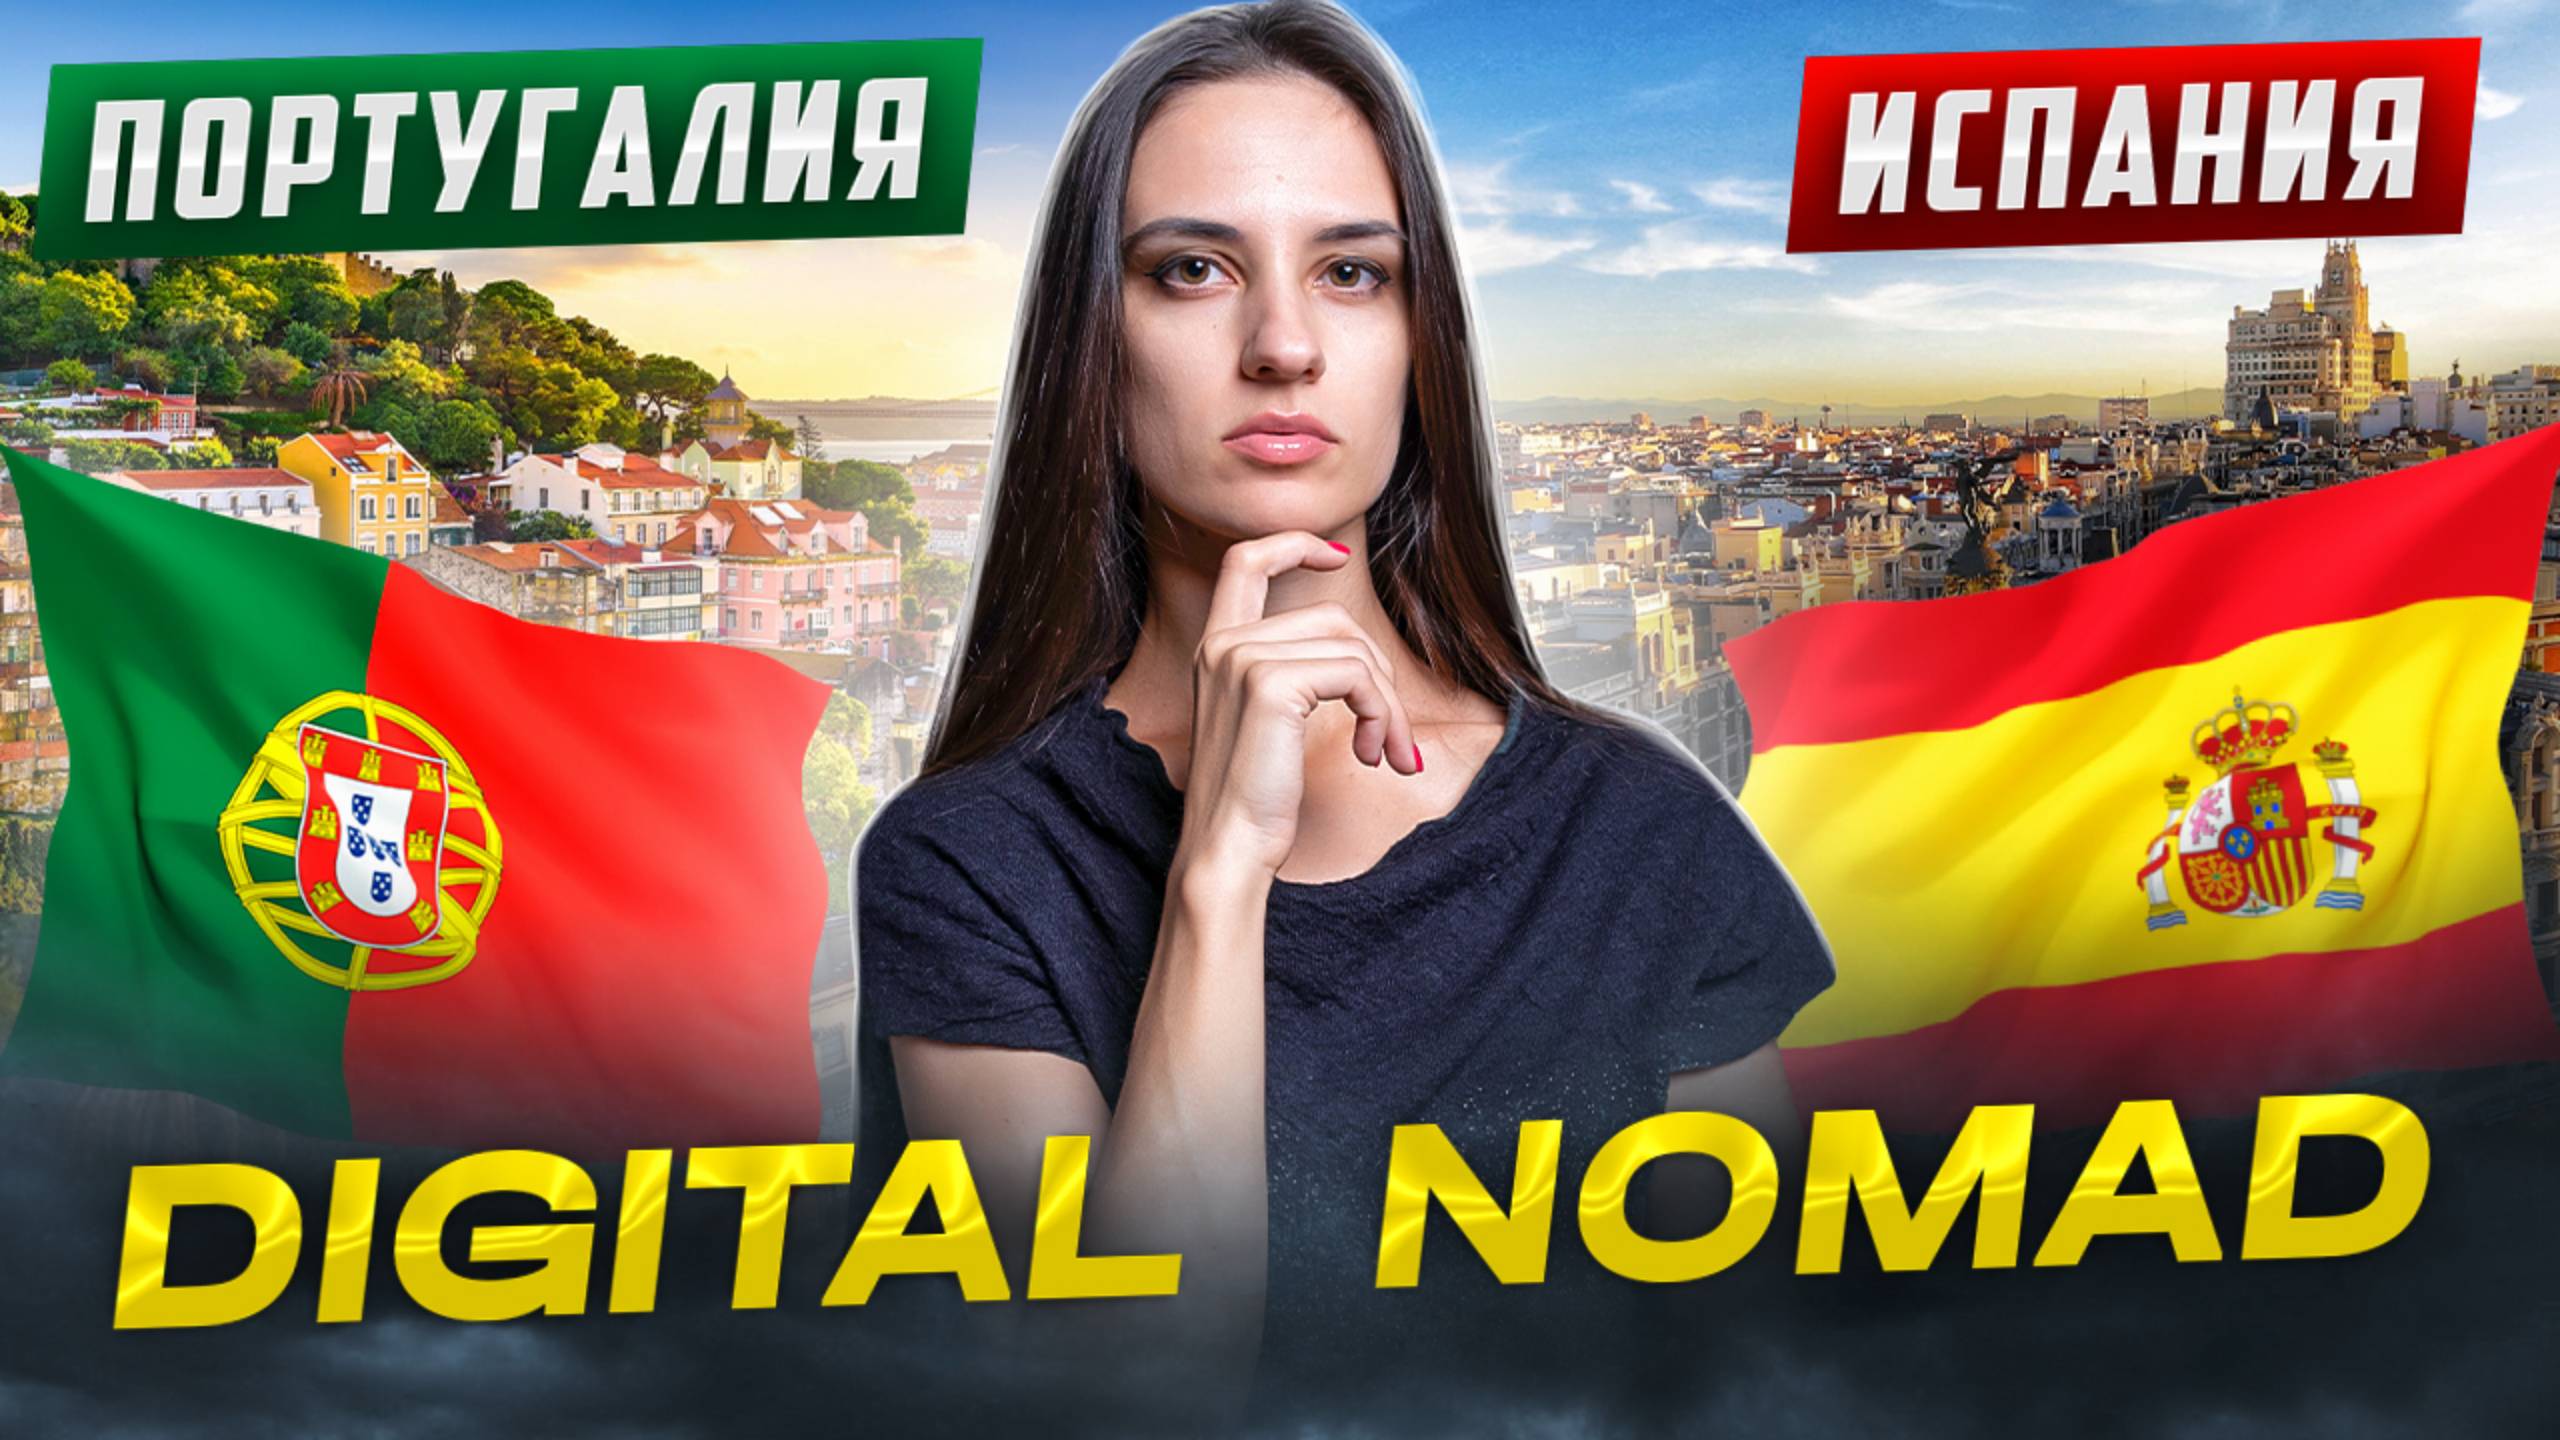 Испания VS Португалия. Digital Nomad. Сравниваем программы для цифровых кочевников